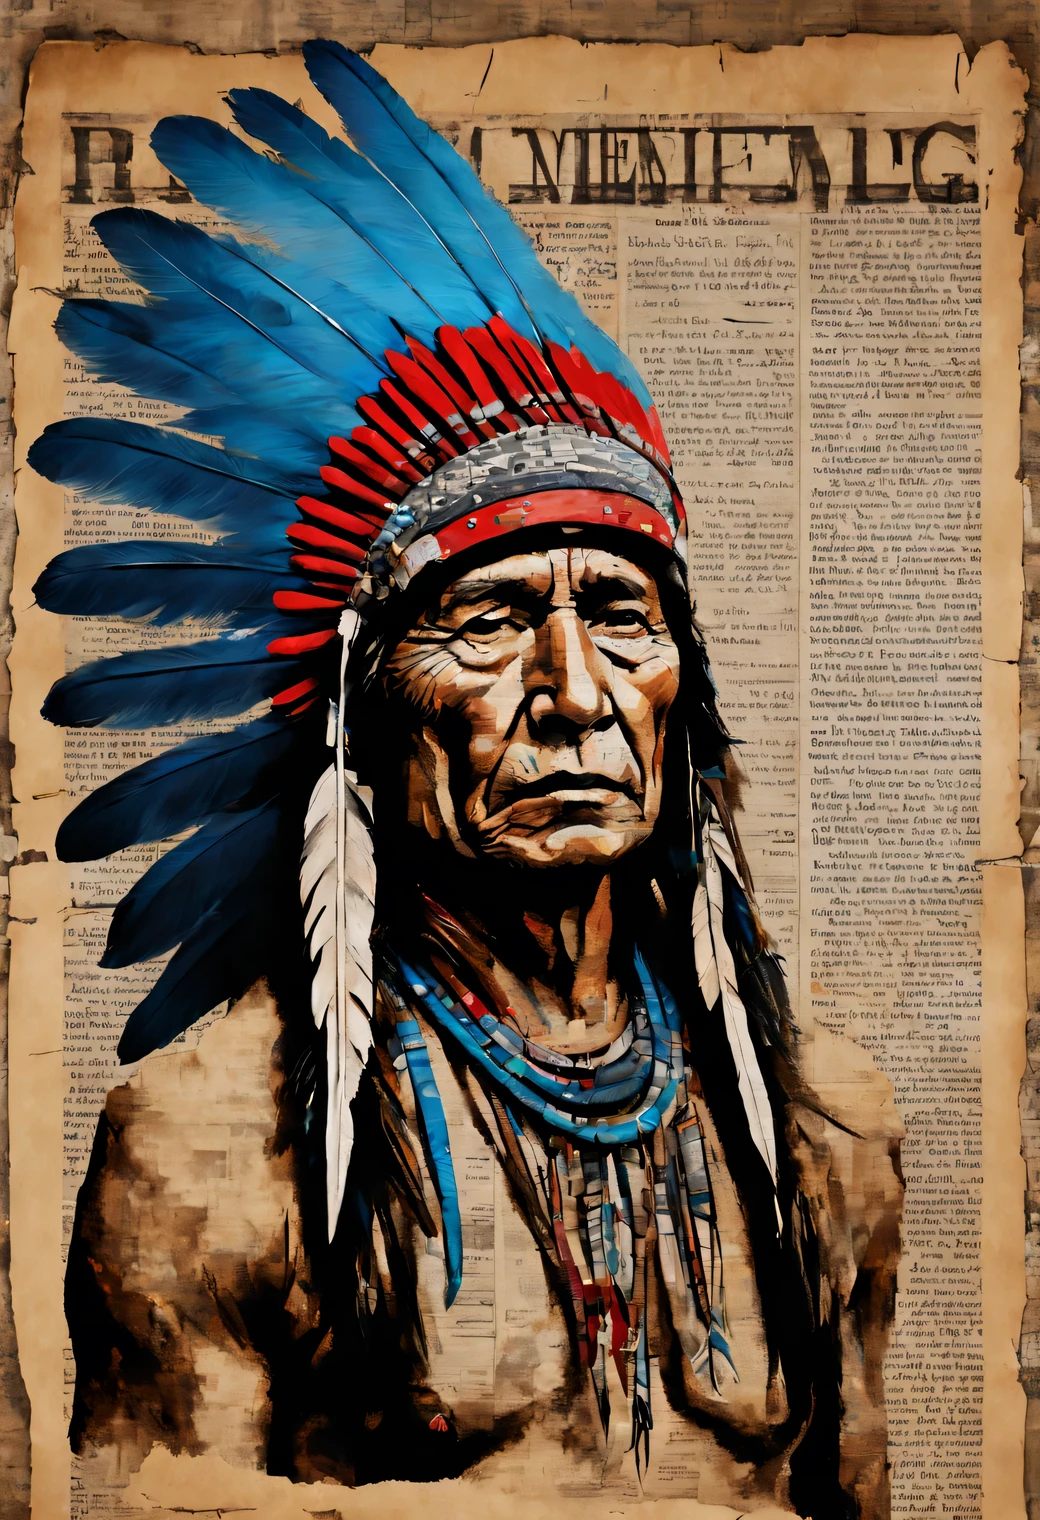 A arte de desenhar no jornal., desenho acrílico em um jornal velho, retrato de um homem nativo americano vermelho usando um cocar com penas azuis desenhado em cima de um jornal velho, Uma alta resolução